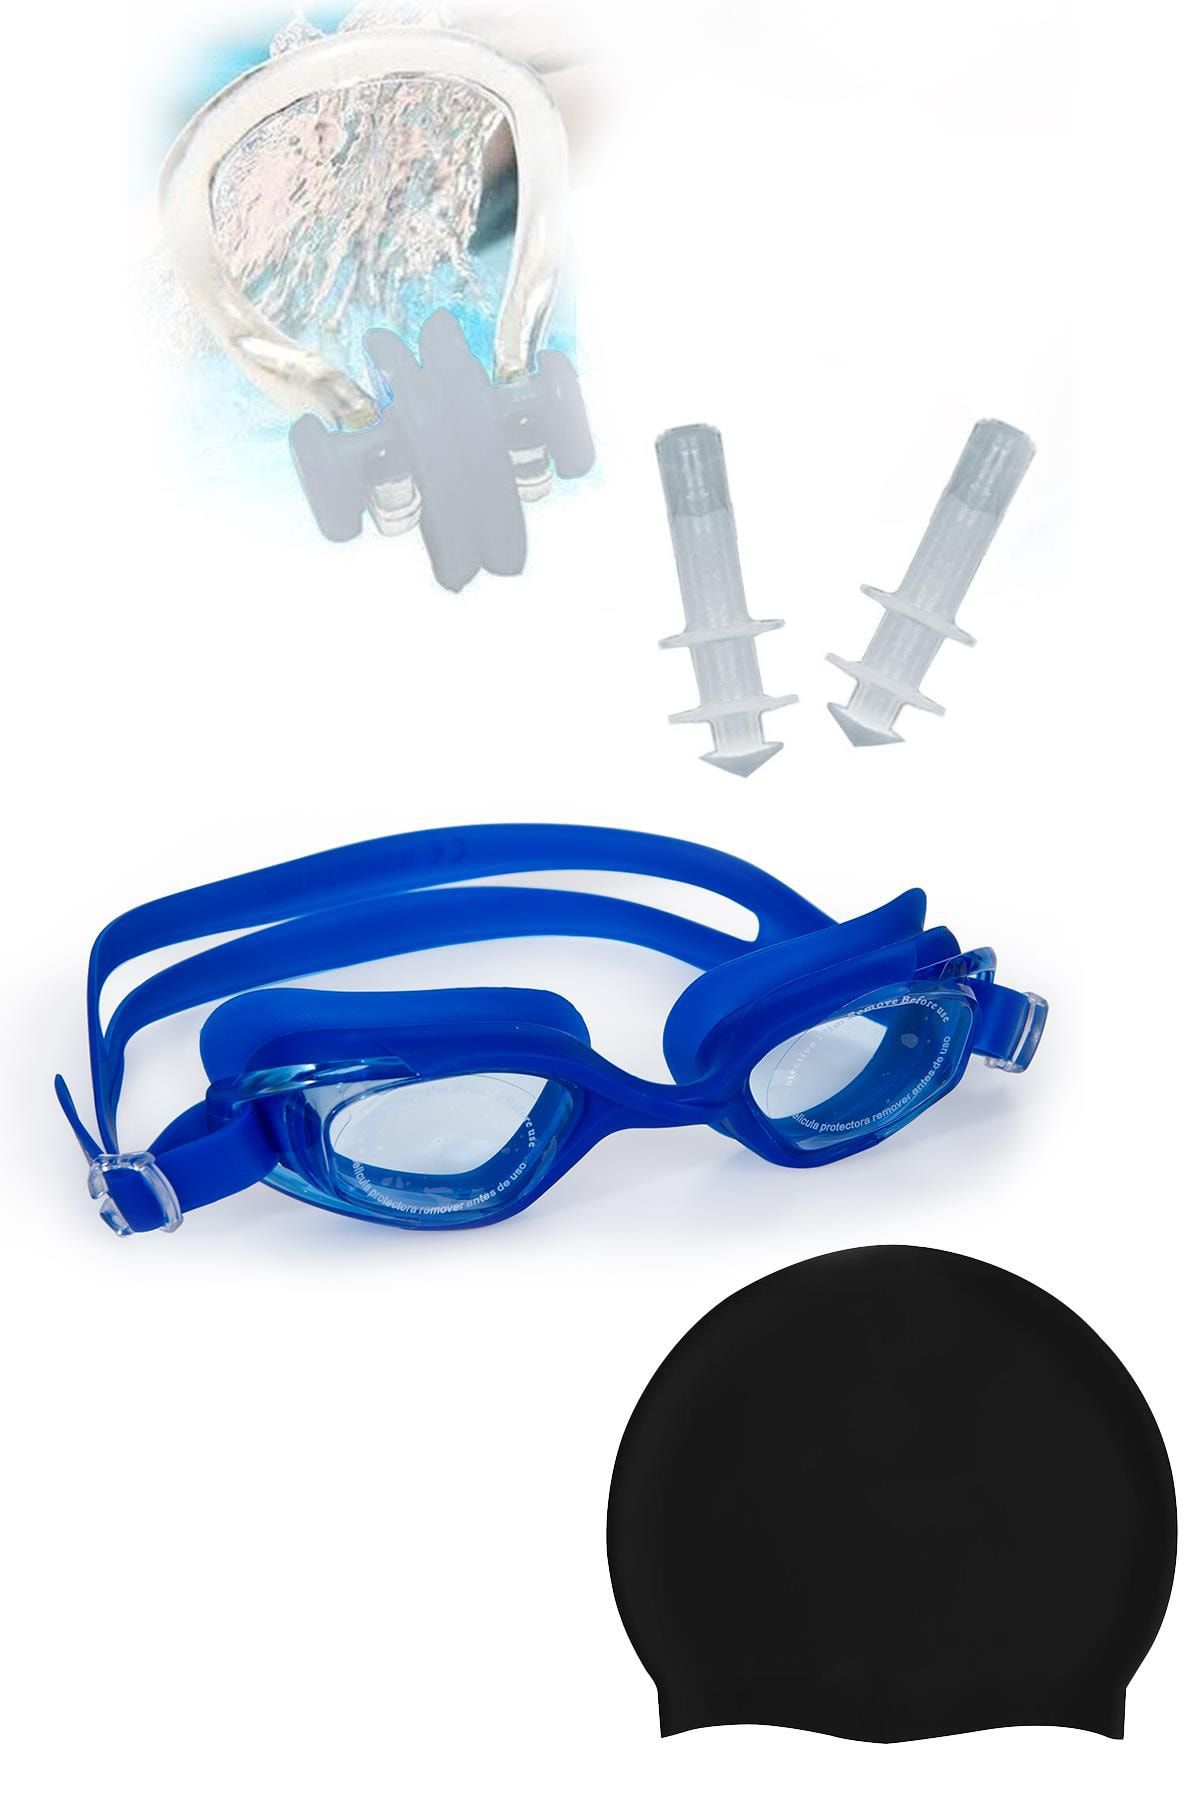 Hsport 4'lü Set Buhu yapmaz Havuz/Deniz Yüzücü gözlüğü, Su geçirmez Silikon bone, kulak tıpası burun tıkacı